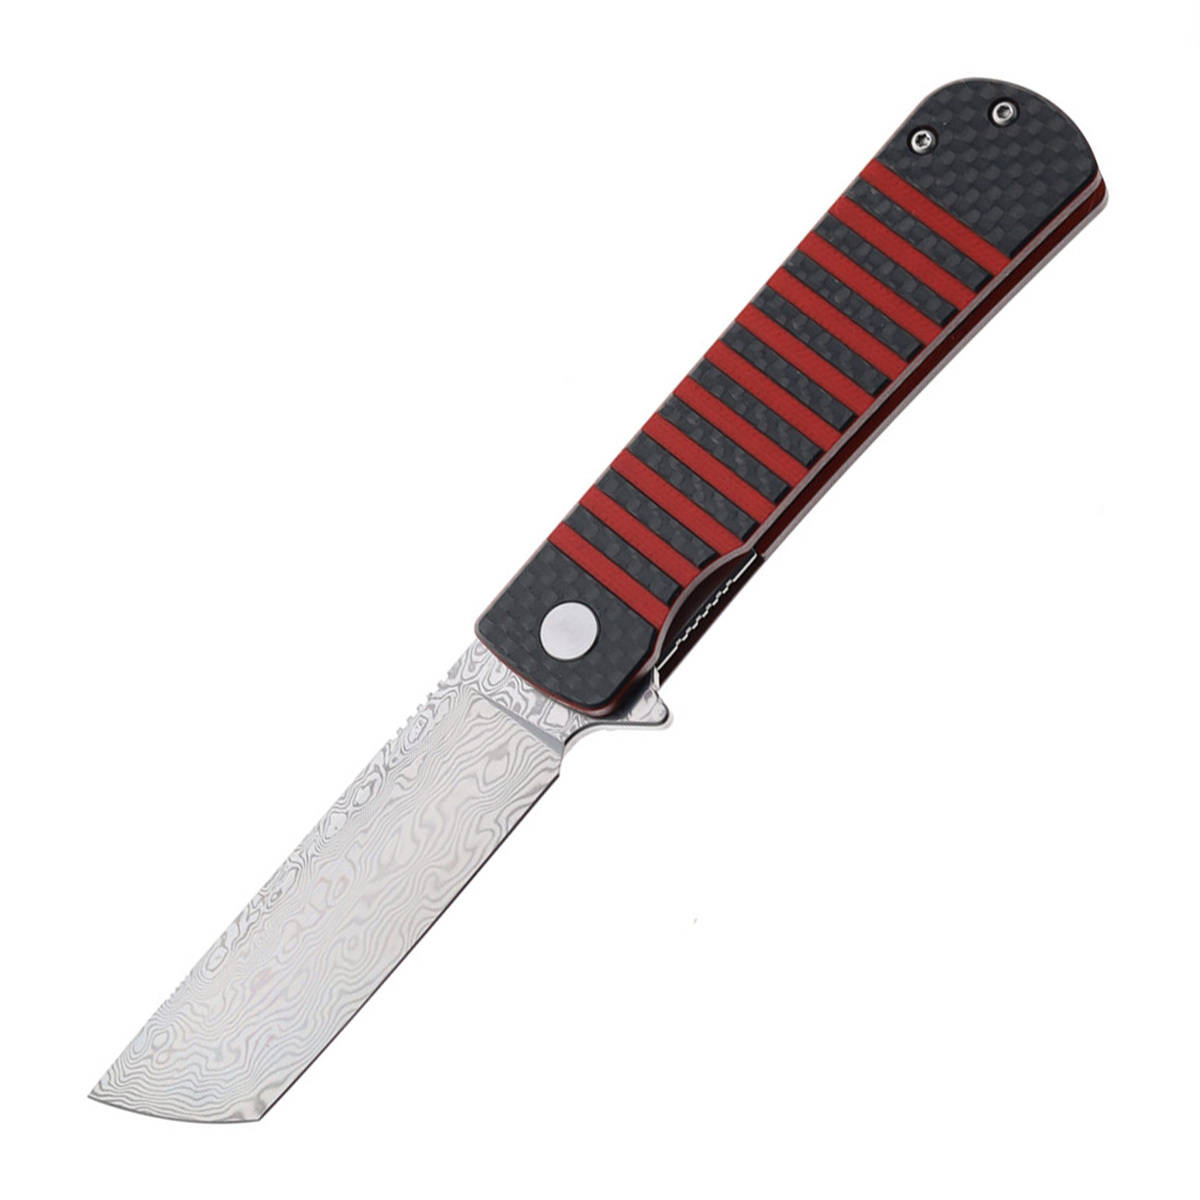 Складной нож Bestech Titan, сталь дамаск, рукоять черно-красная G10/карбон складной нож bestech swift сталь d2 micarta